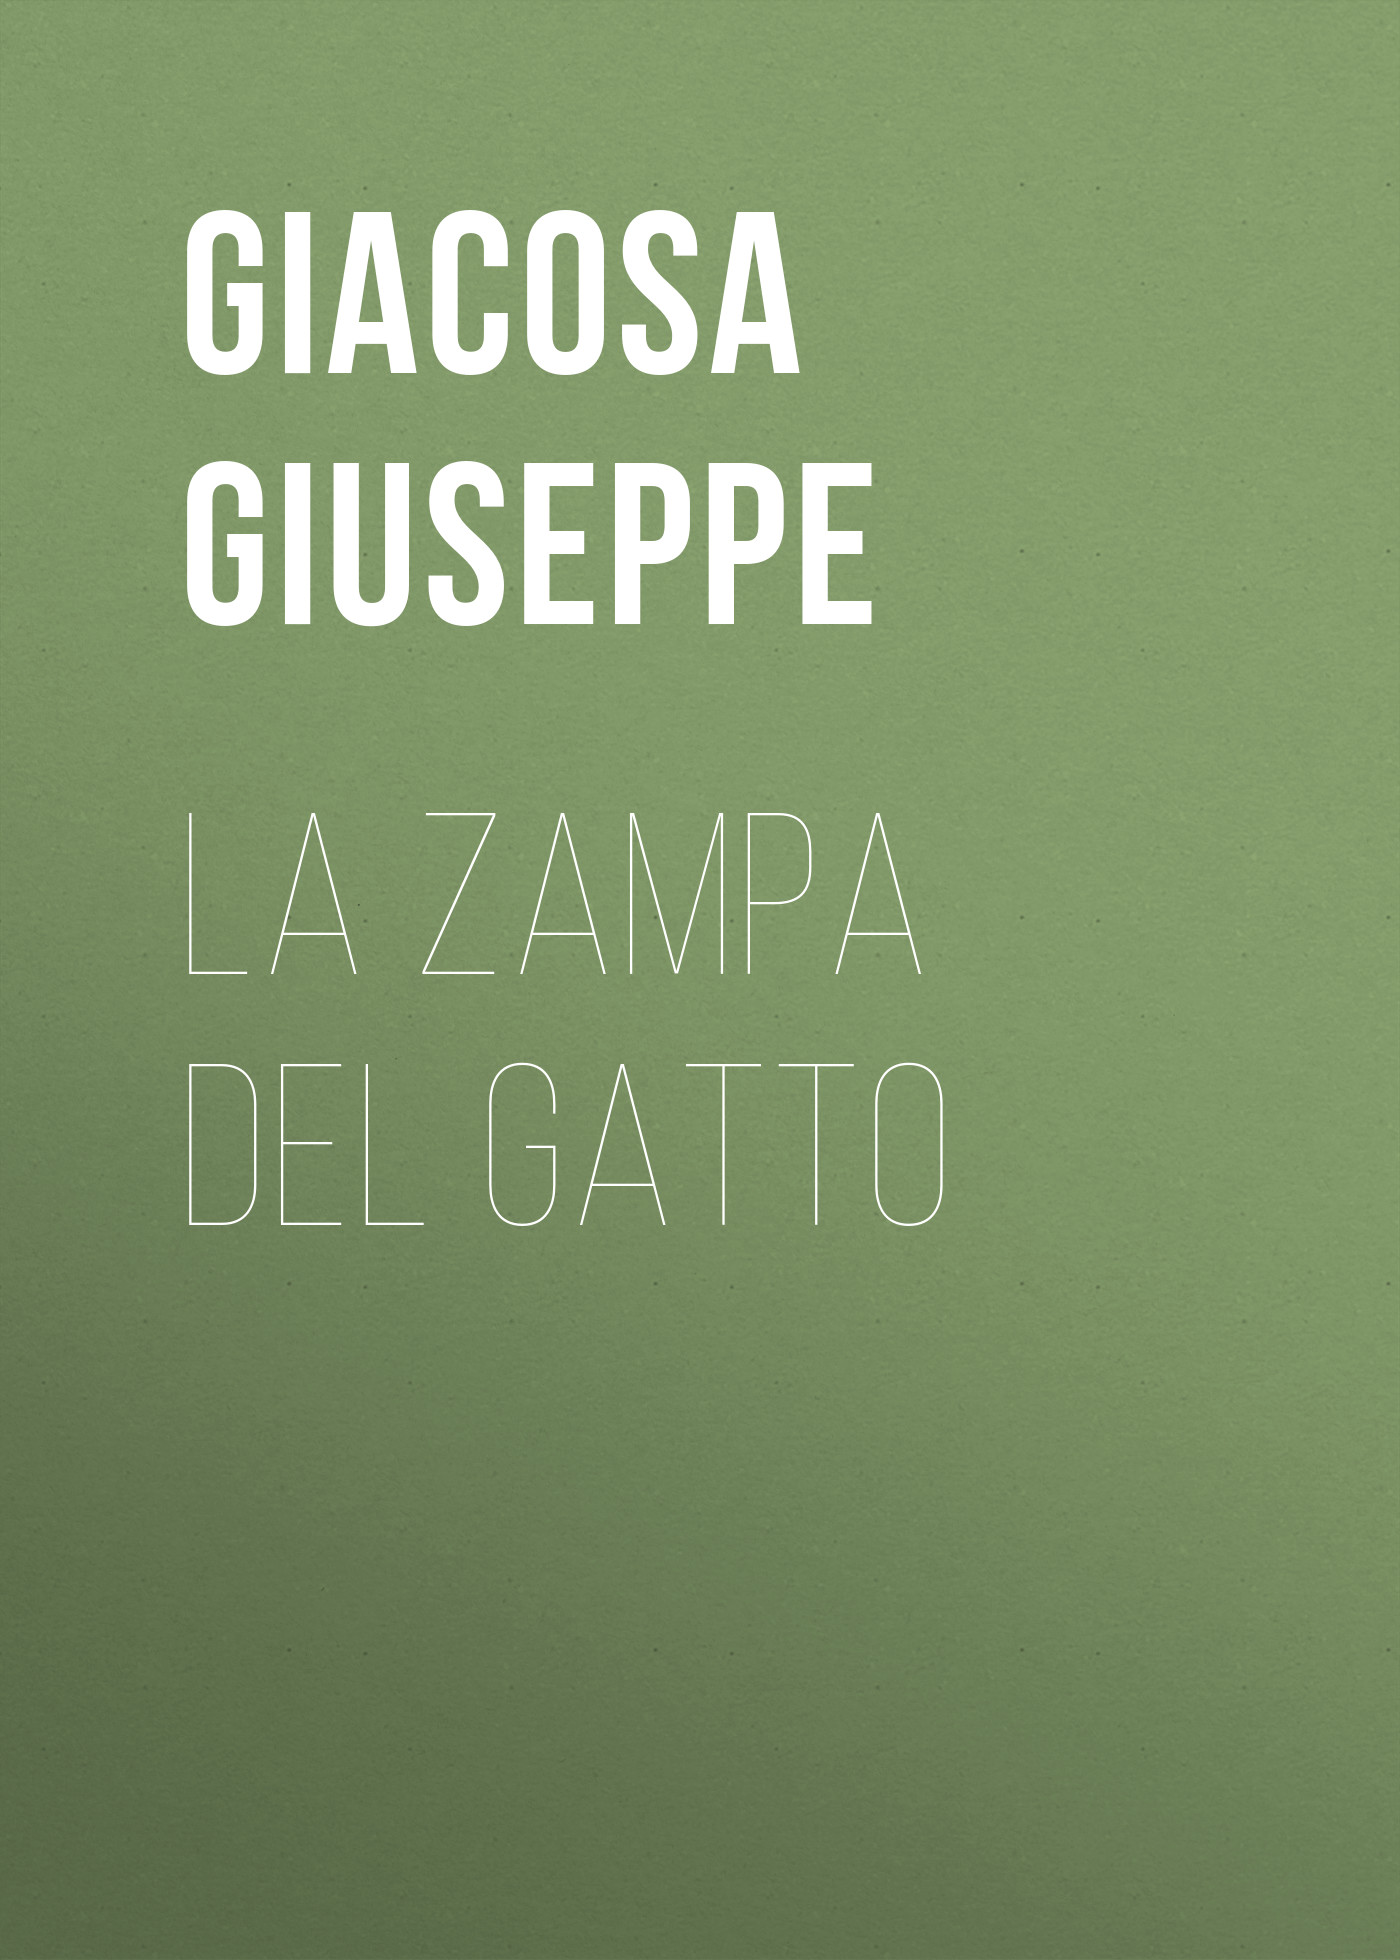 Книга La zampa del gatto из серии , созданная Giuseppe Giacosa, может относится к жанру Зарубежная старинная литература, Зарубежная классика, Зарубежная драматургия. Стоимость электронной книги La zampa del gatto с идентификатором 24936637 составляет 0 руб.